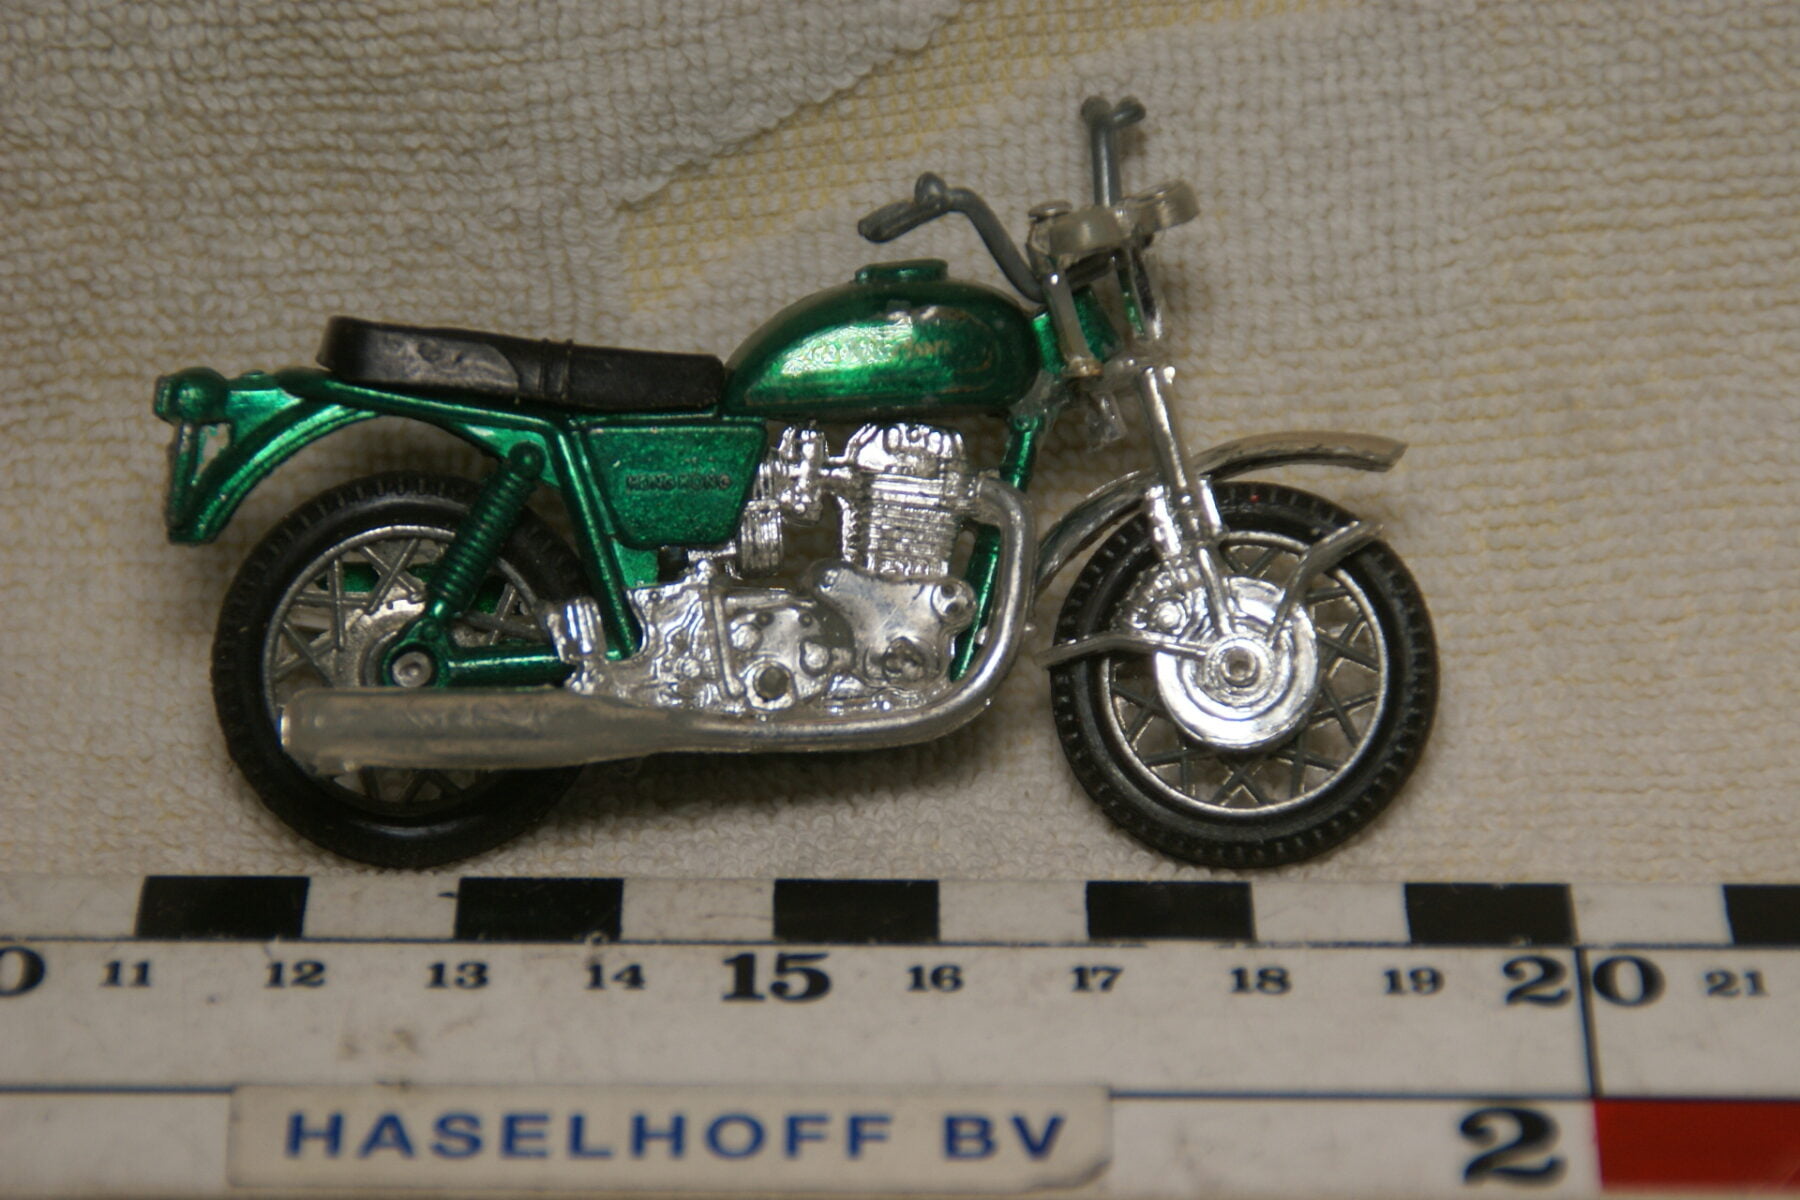 DSC08952 miniatuur motorfiets groenca  1op43 Hong Kong